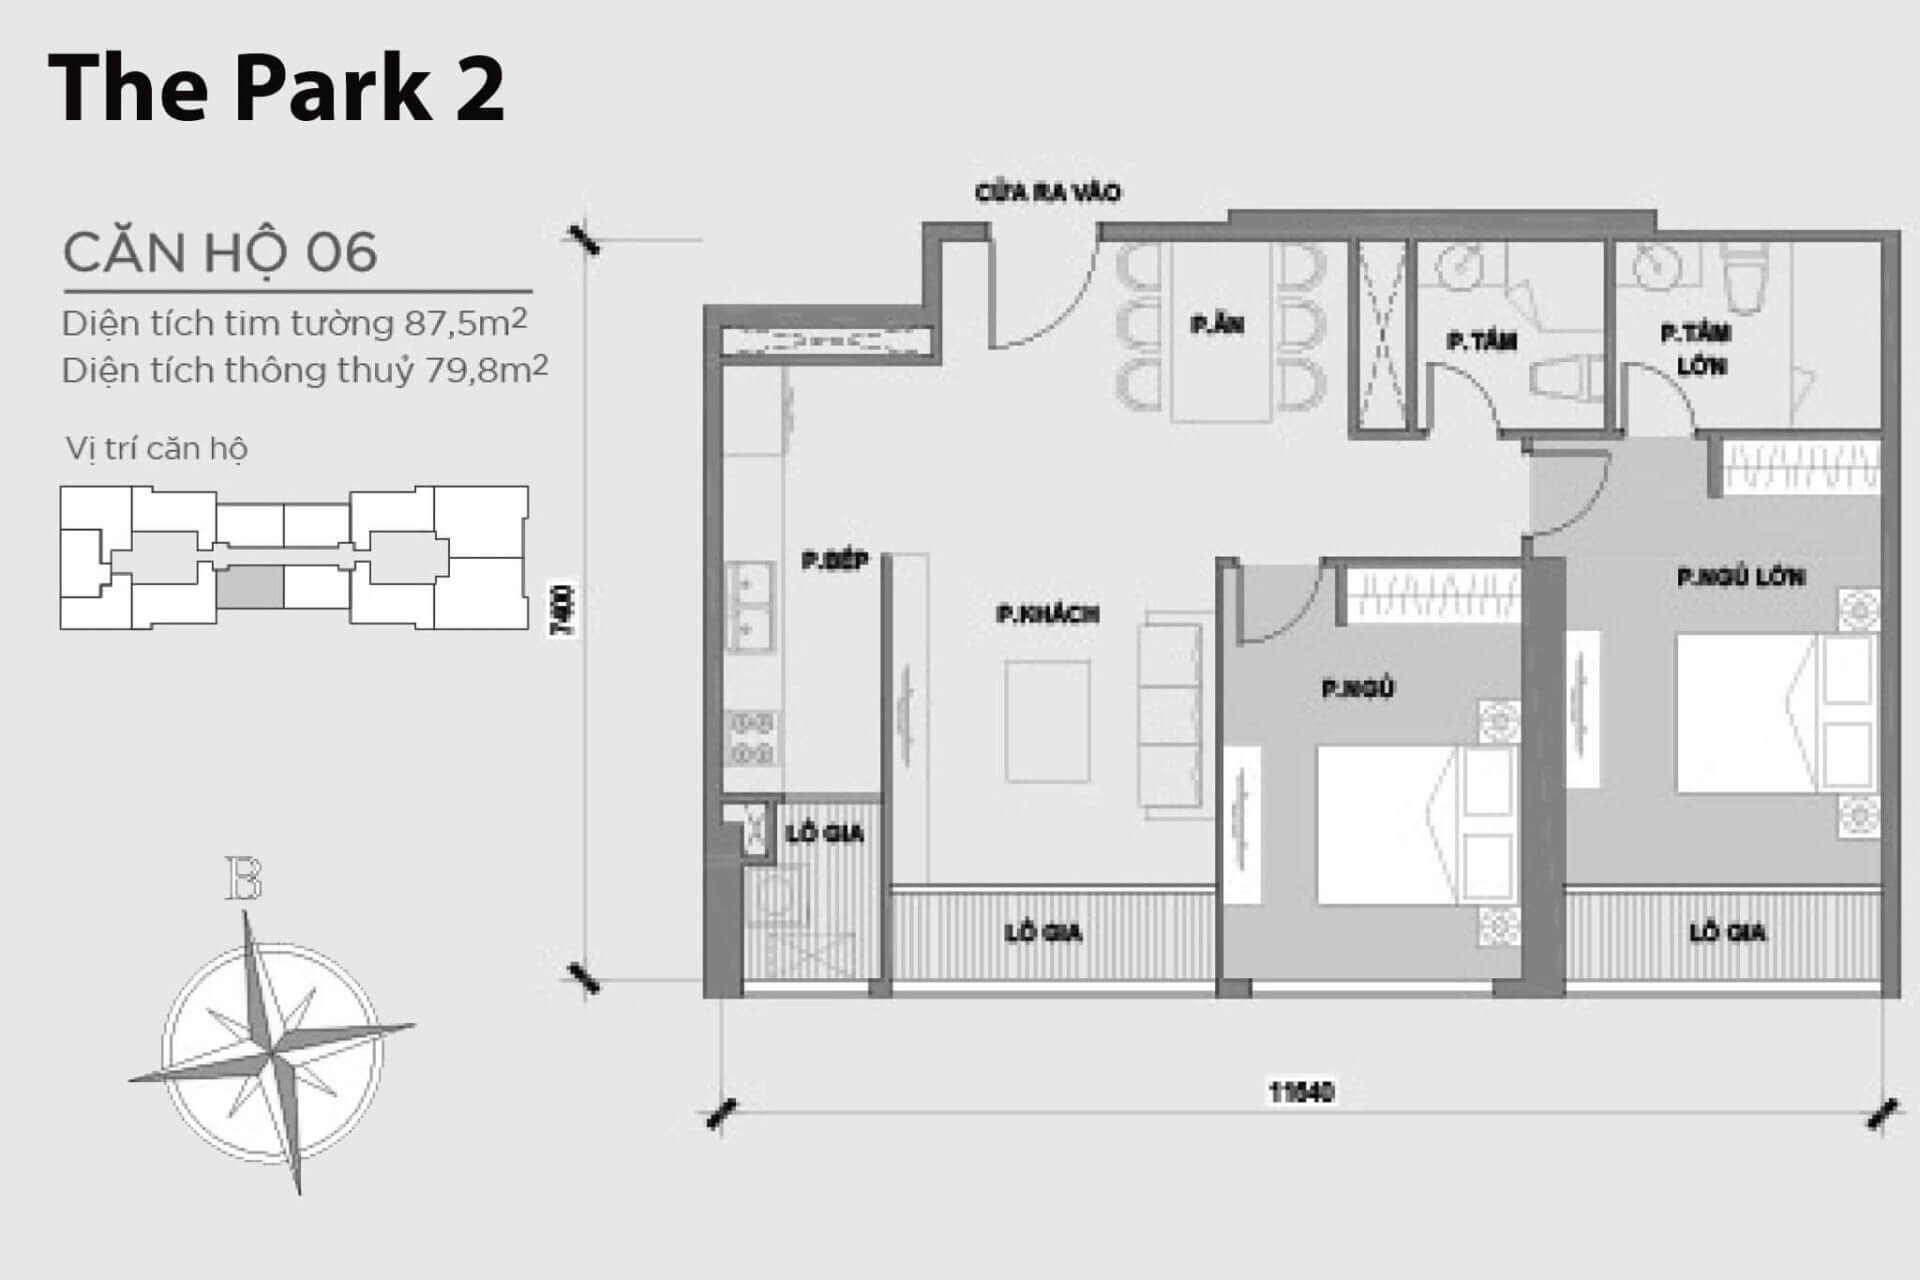 mặt bằng layout căn hộ số 06 Park 2 Vinhomes Central Park